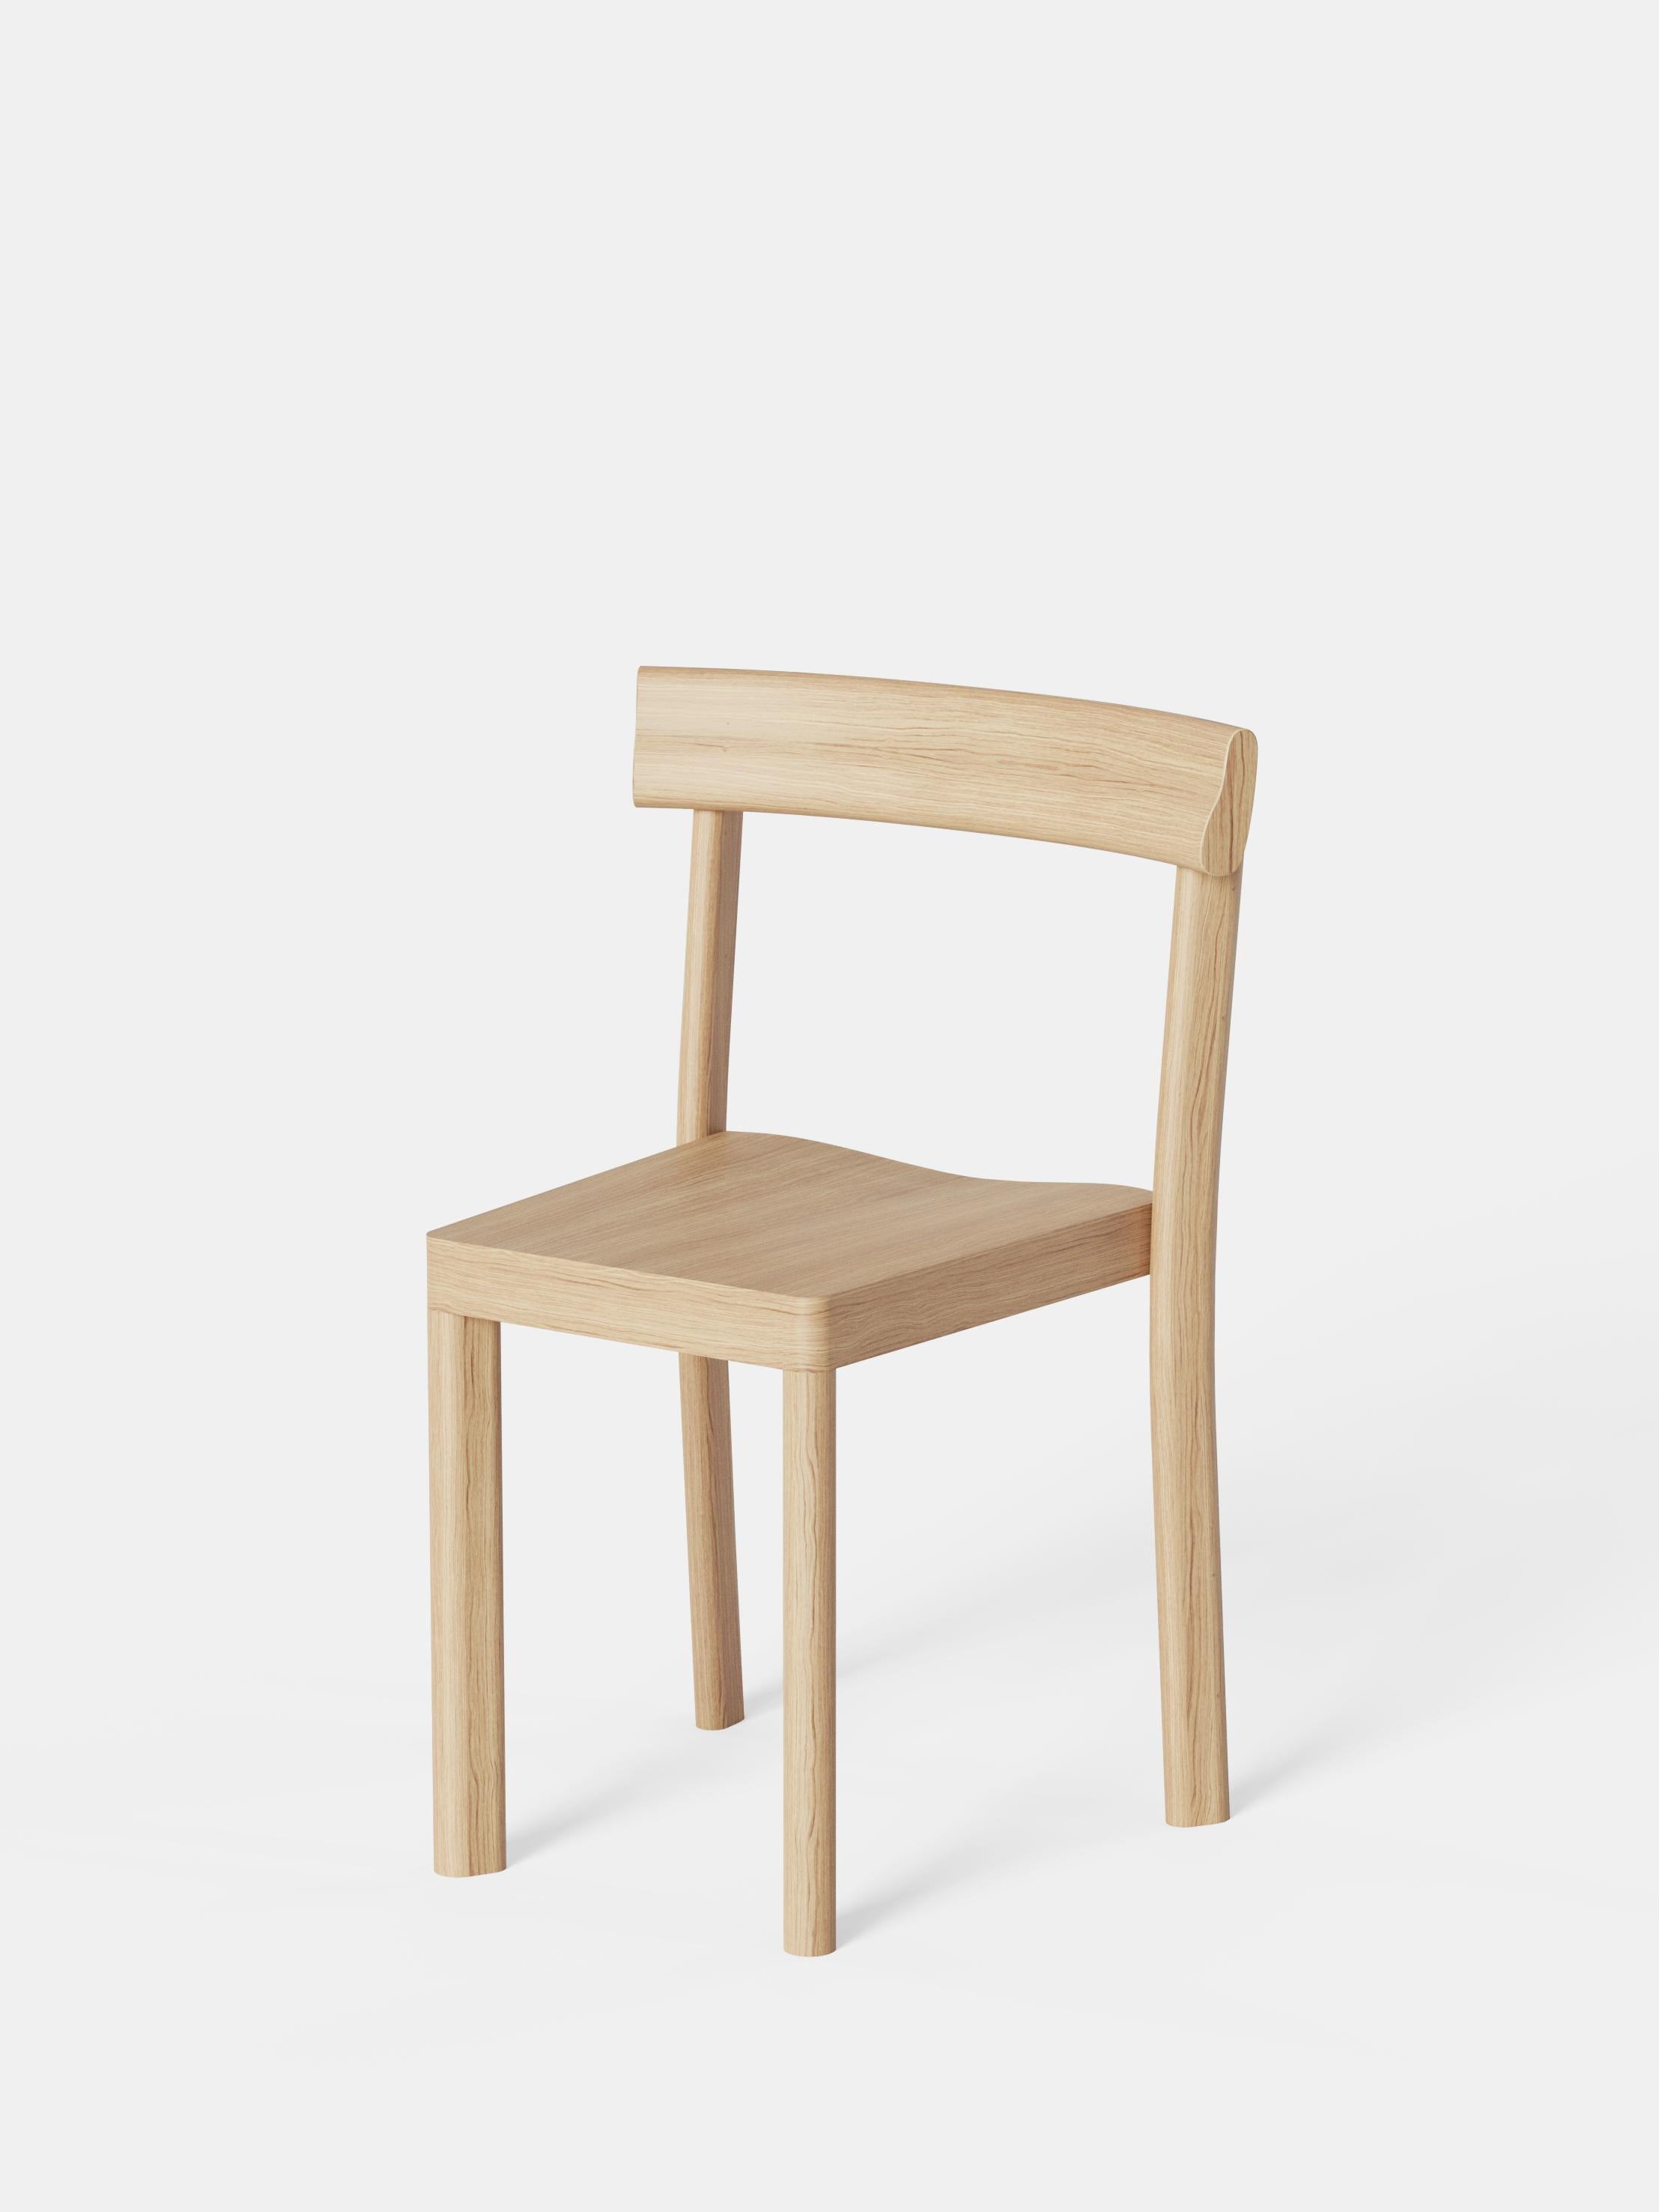 Ensemble de 6 chaises Galta en chêne par Kann Design
Dimensions : D 43 x L 51 x H 80 cm.
MATERIAL : Chêne naturel.
Disponible dans d'autres finitions.

Avec la Galta, SCMP Design/One repense la chaise de bistrot classique. Le résultat est